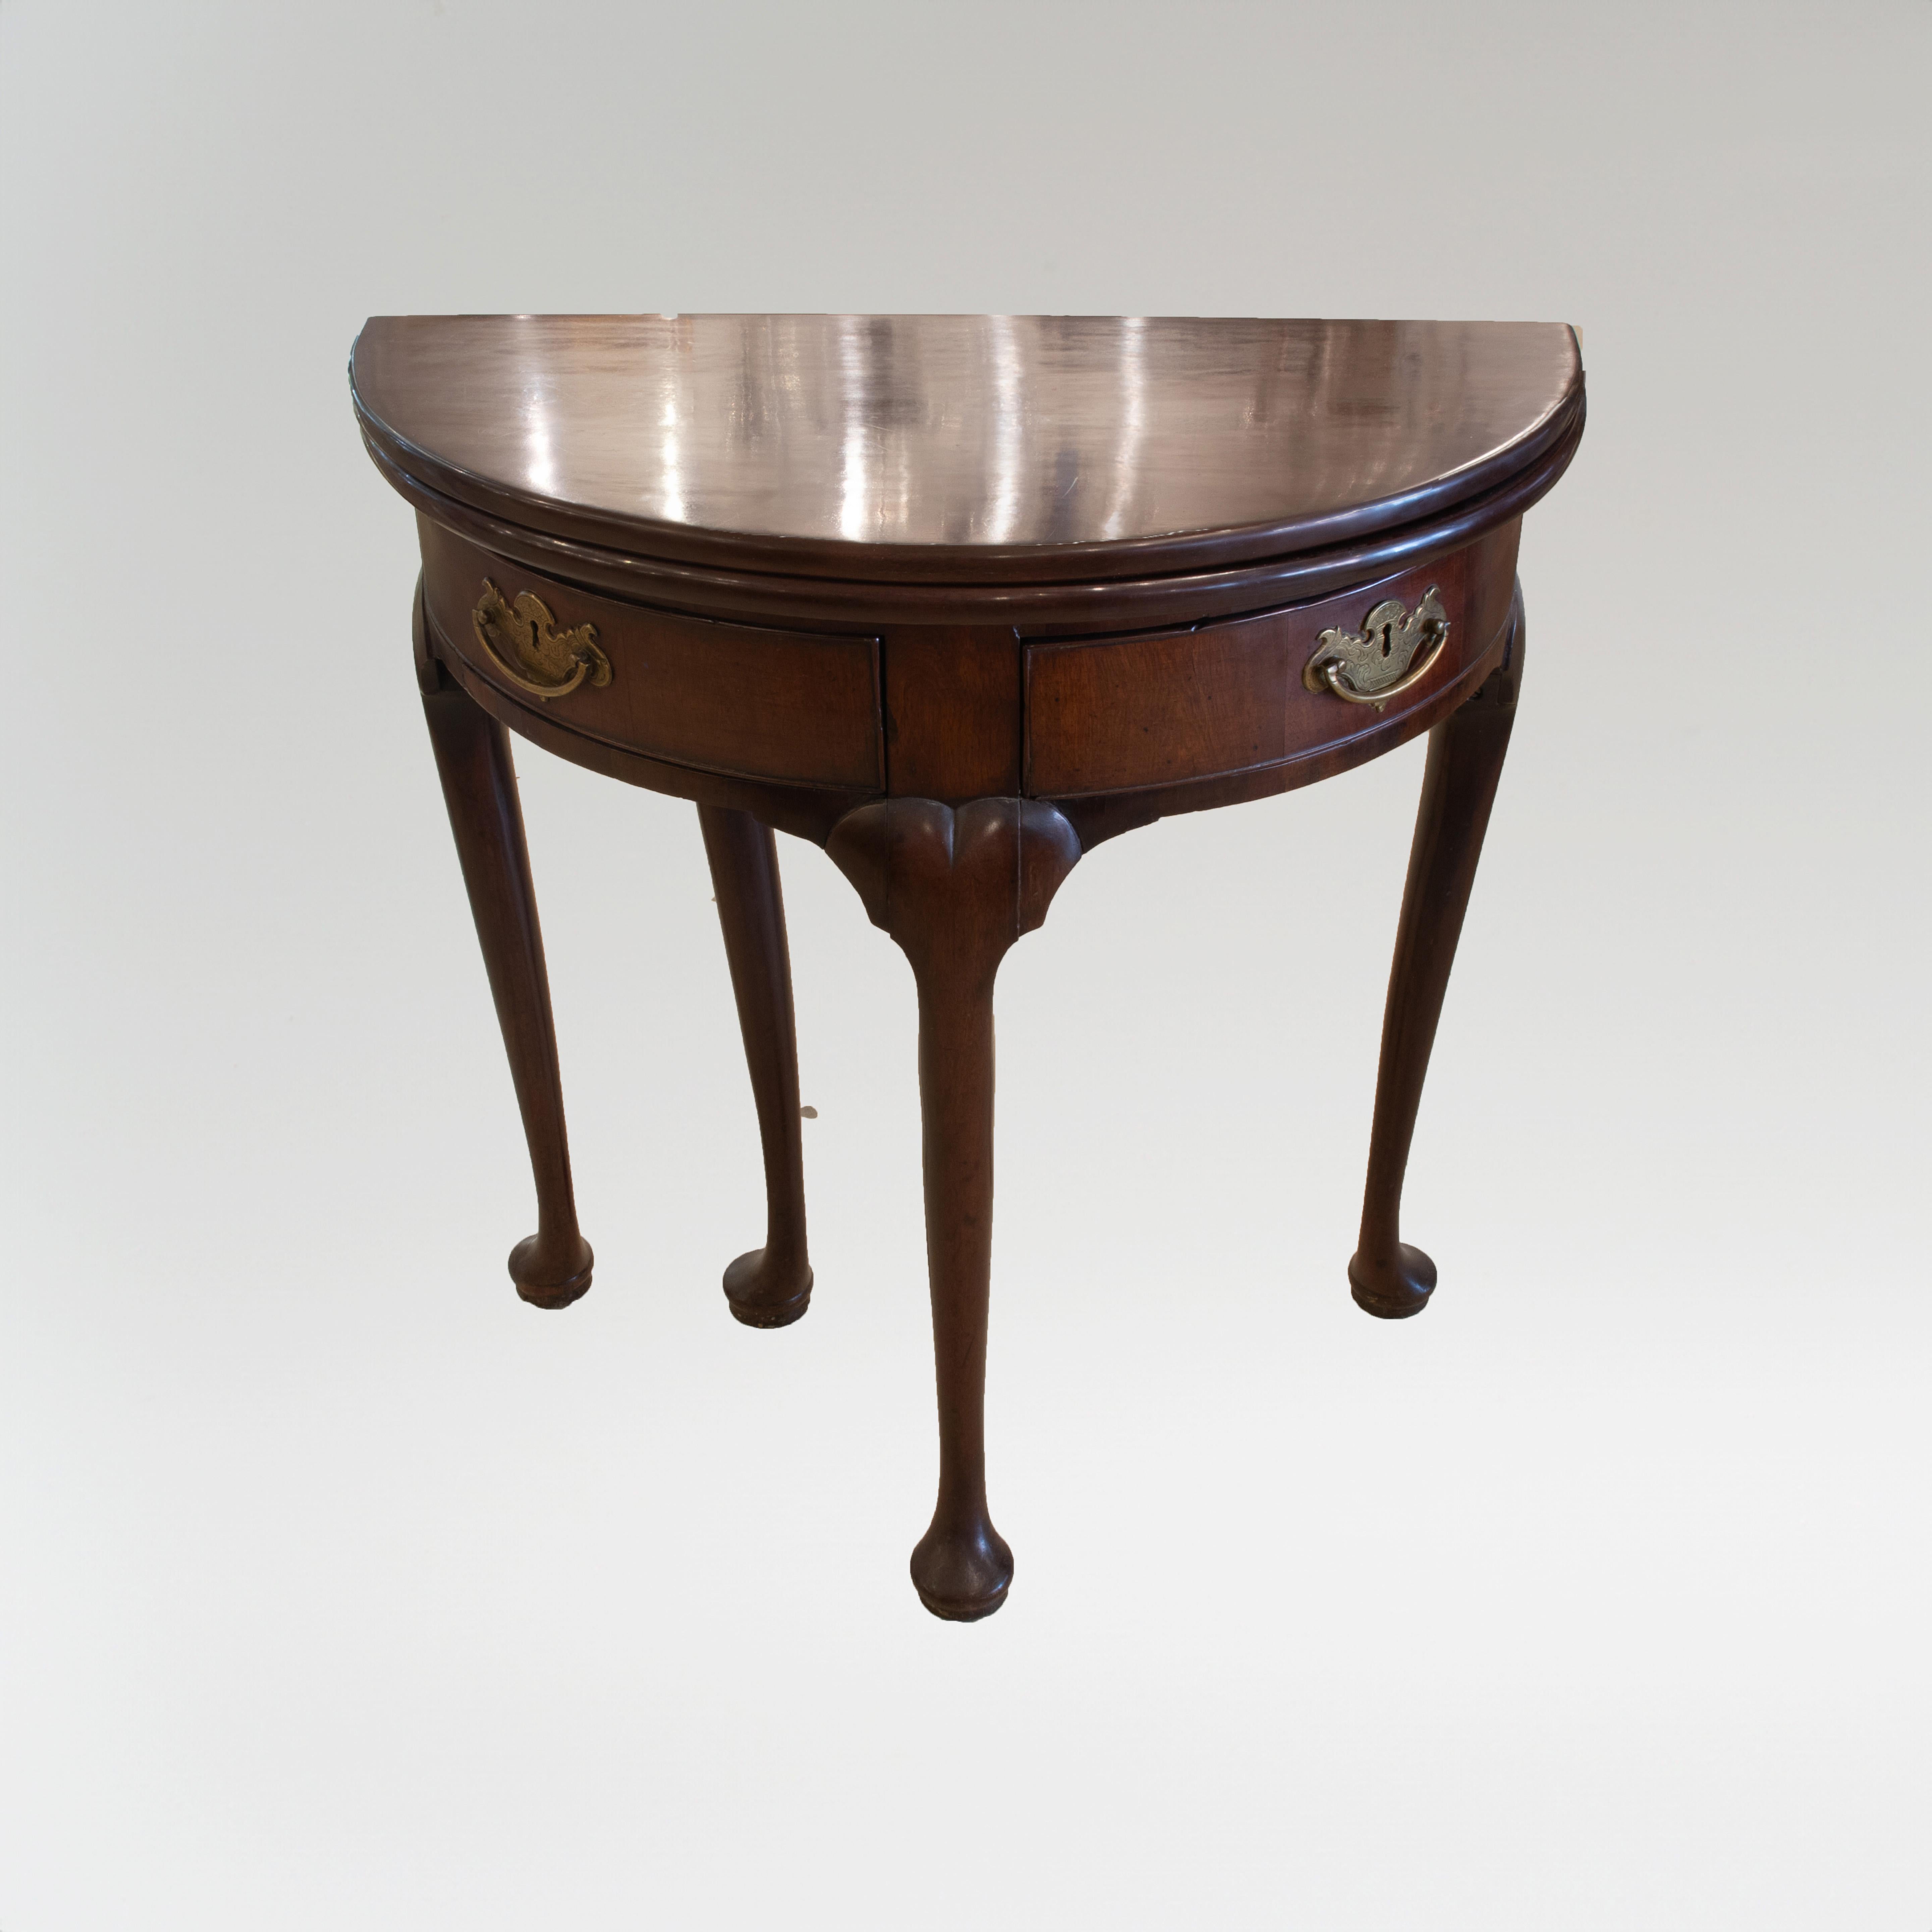 Il s'agit d'une belle table démilune anglaise de George III en acajou avec deux tiroirs qui s'ouvrent. Le style George III a produit des pièces d'une qualité exceptionnelle que de nombreux collectionneurs considèrent comme les plus beaux exemples de